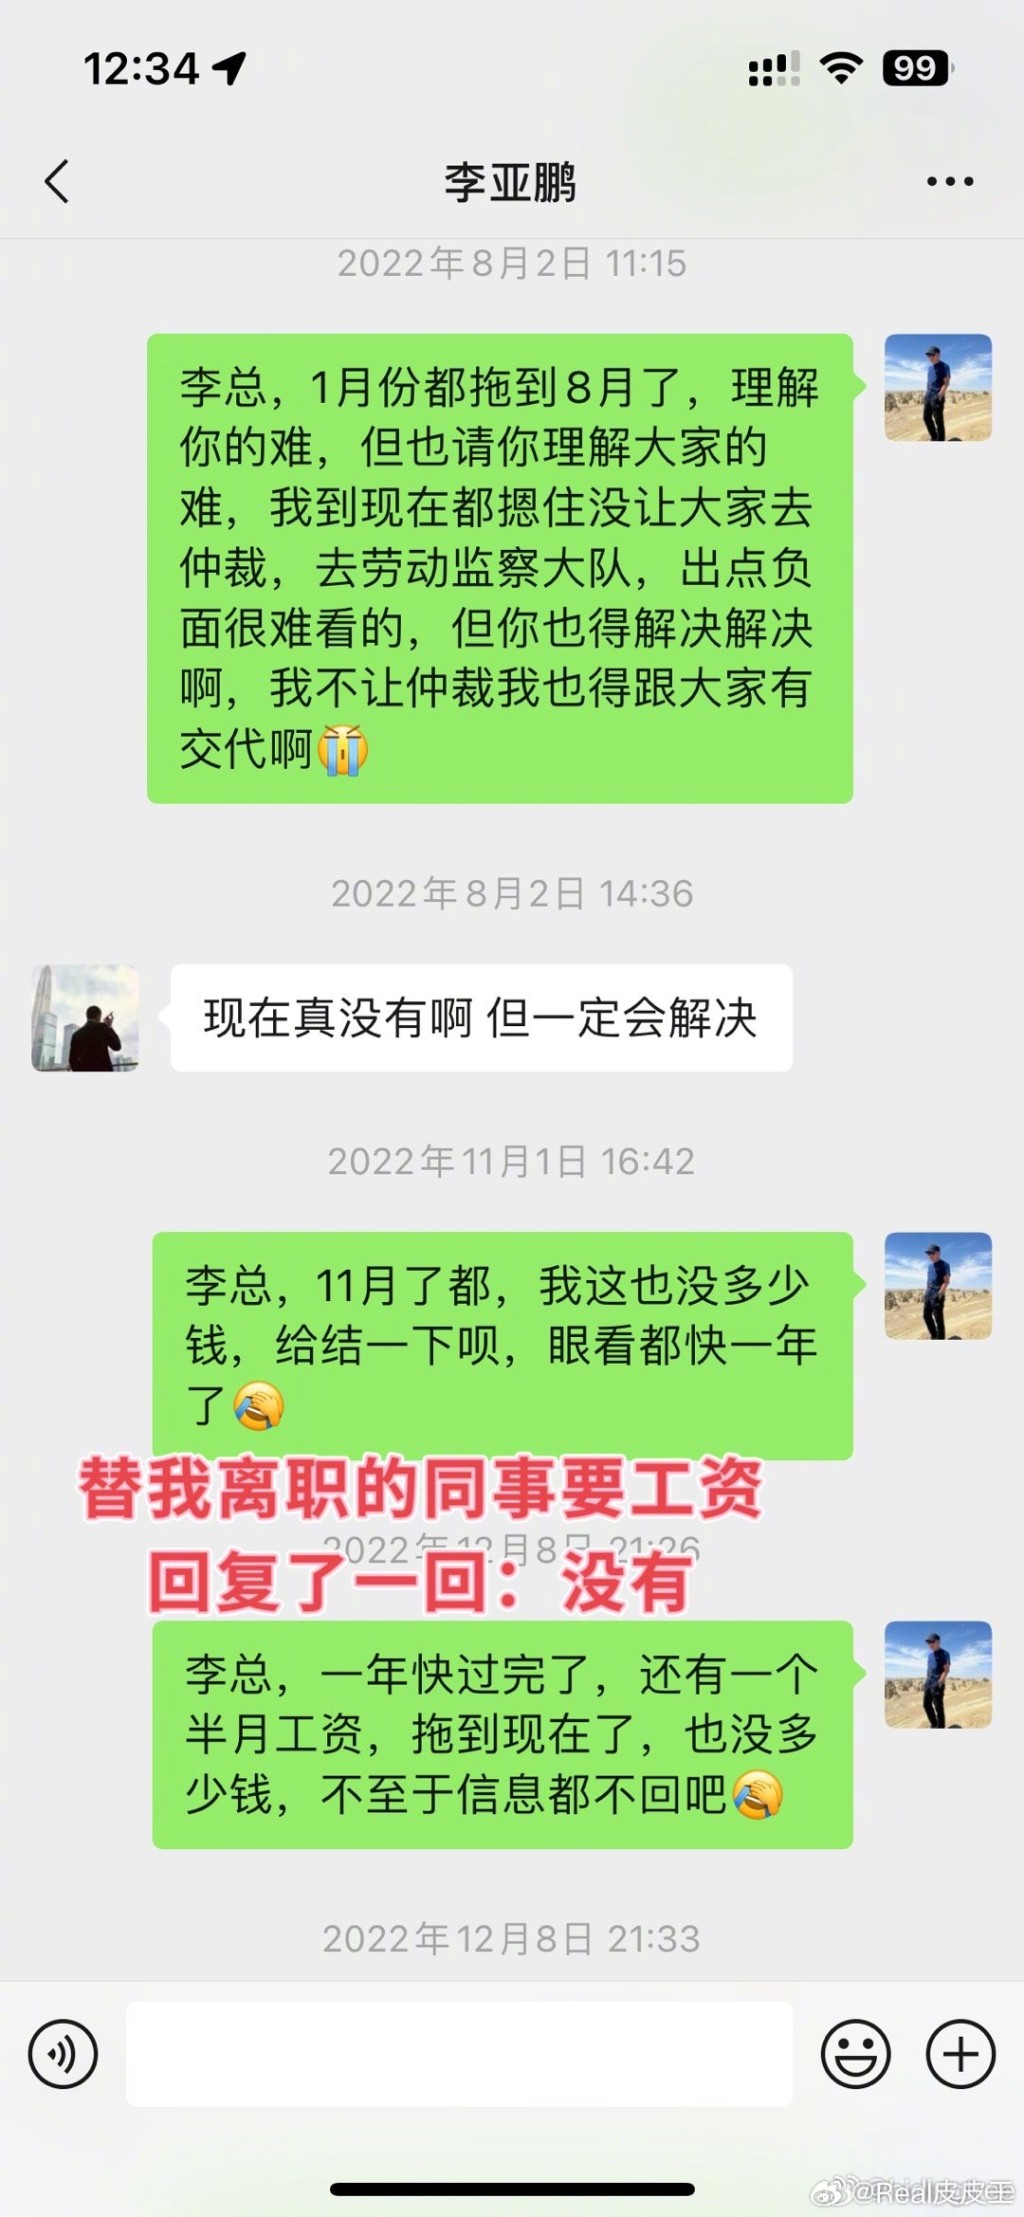 前員工公開李亞鵬的對話截圖。